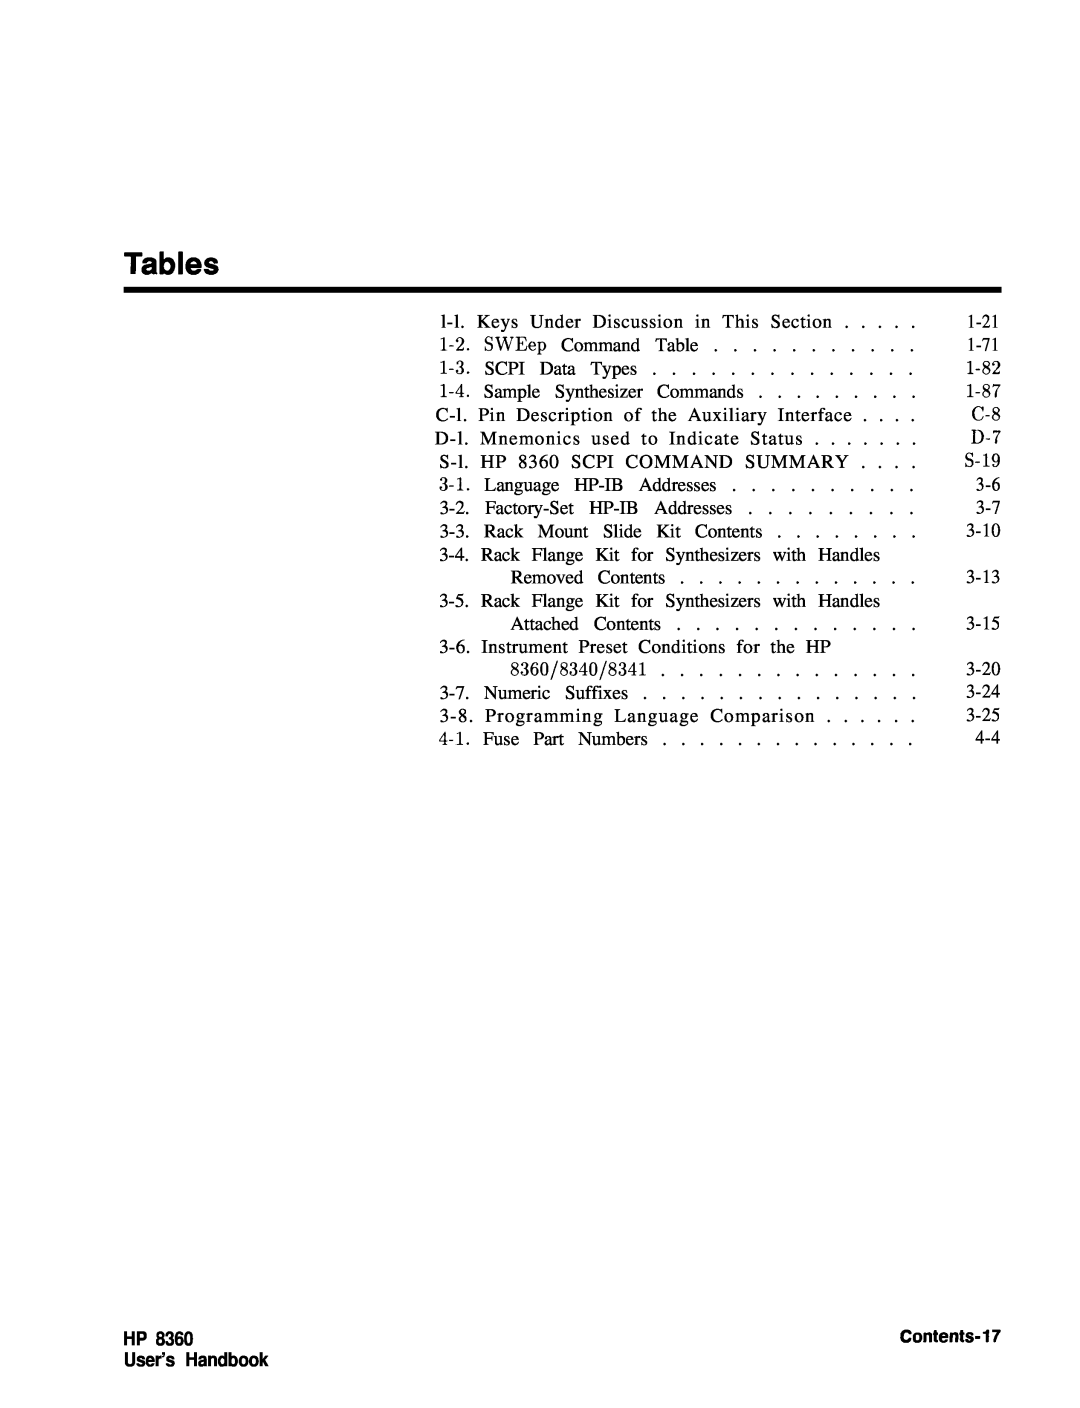 HP 83620A, 24A, 22A manual Tables, User’s Handbook, Contents-17 